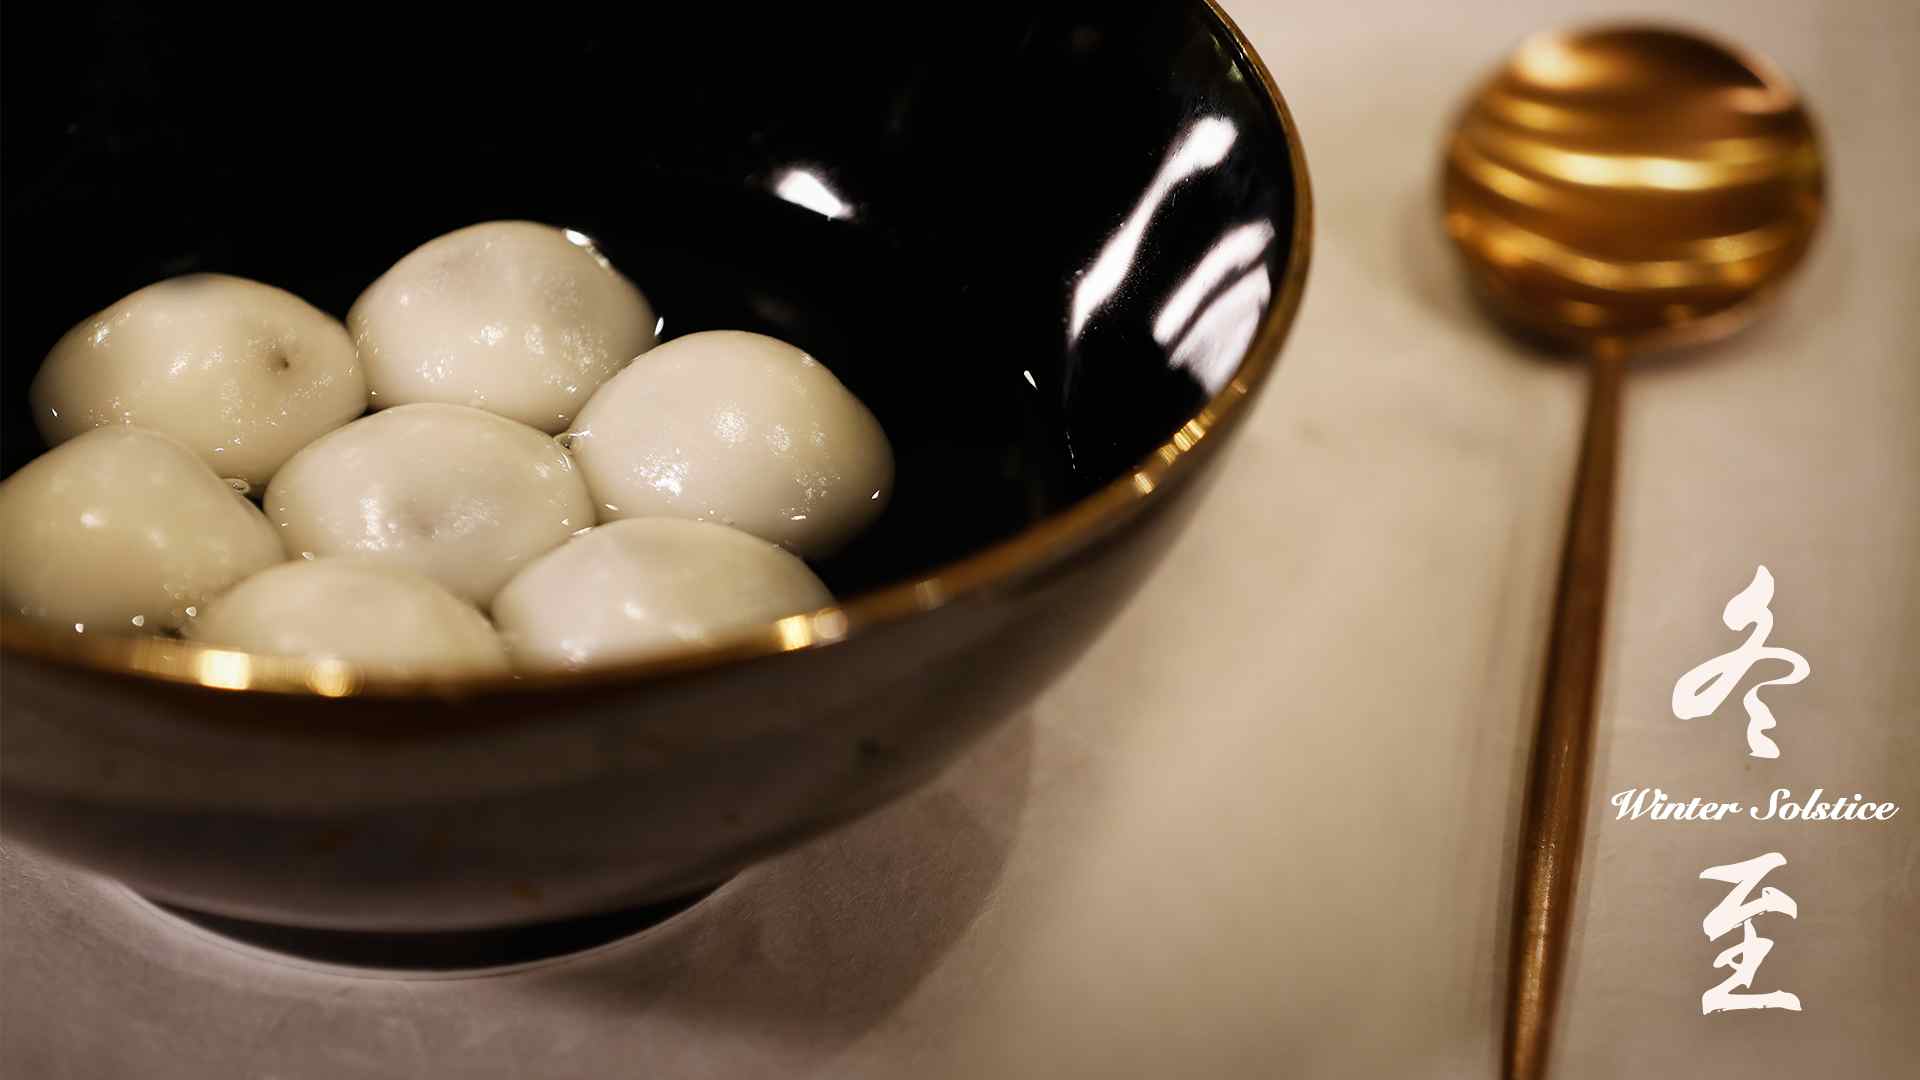 Winter Solstice: A bowl of sweet rice dumplings reunites family